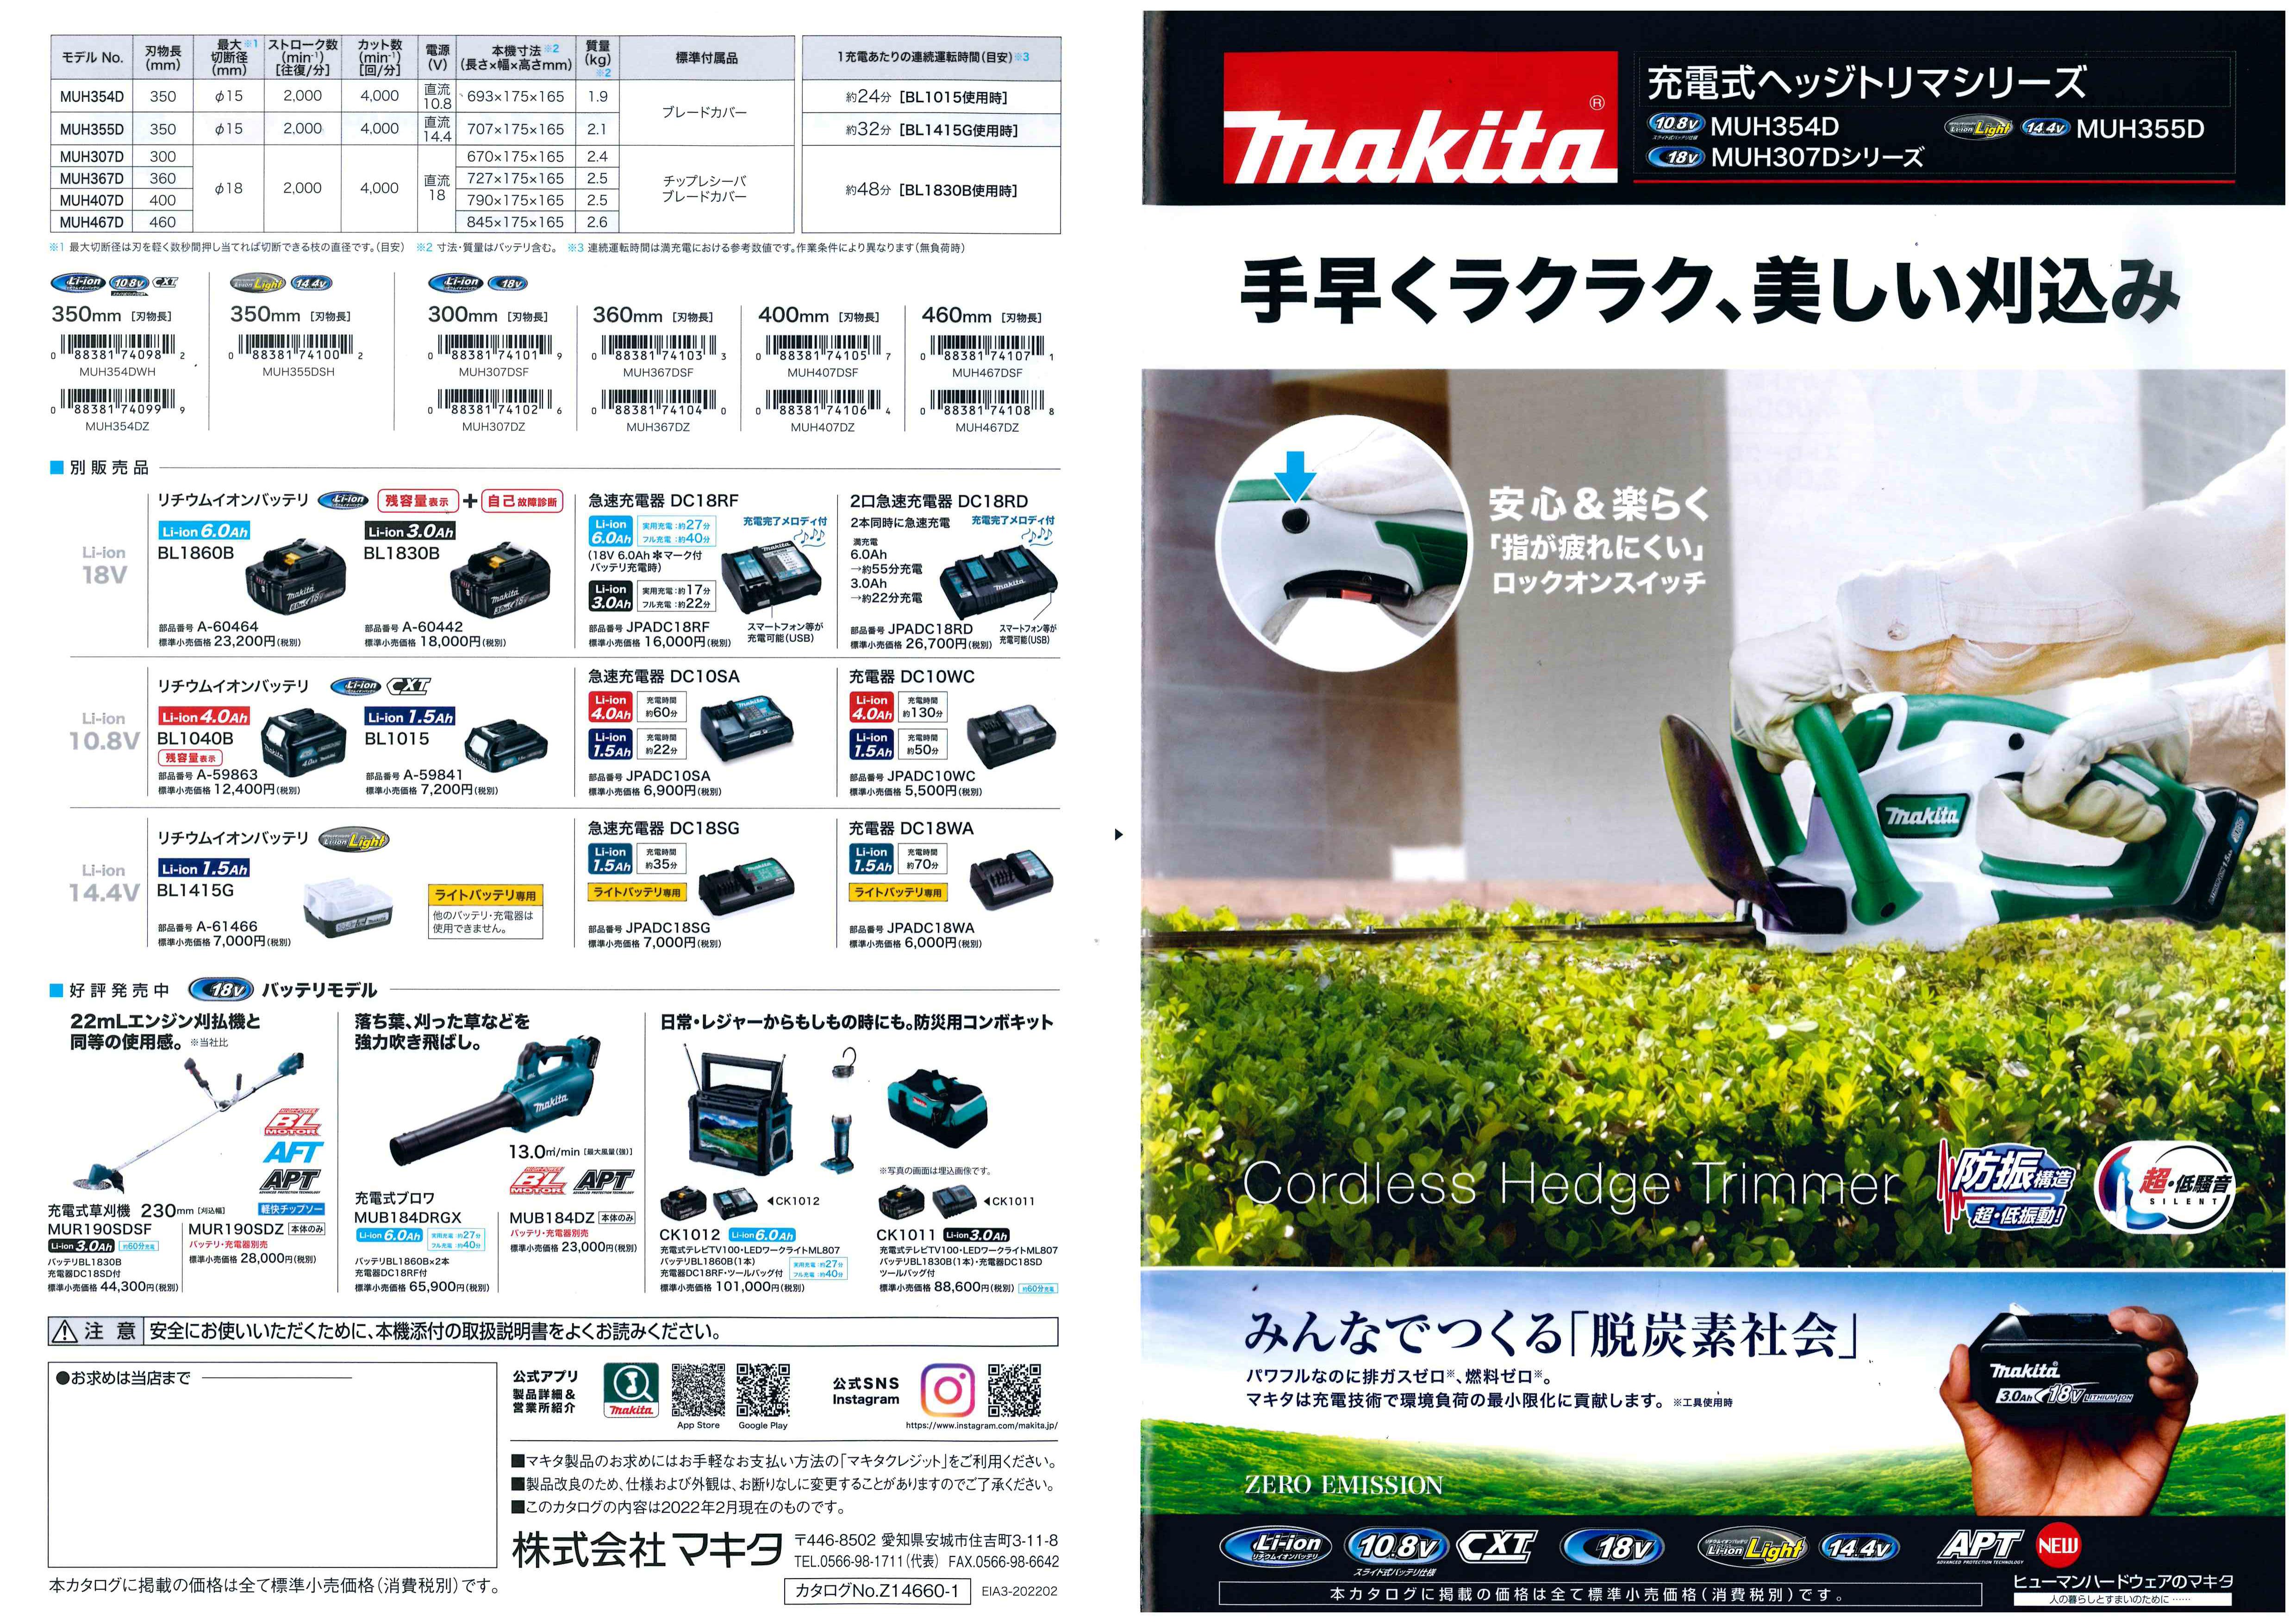 マキタ 10.8V 充電式ミニ生垣バリカン MUH264DSH 260mm 1.5Ah 特殊コーディング刃仕様 セット - 5